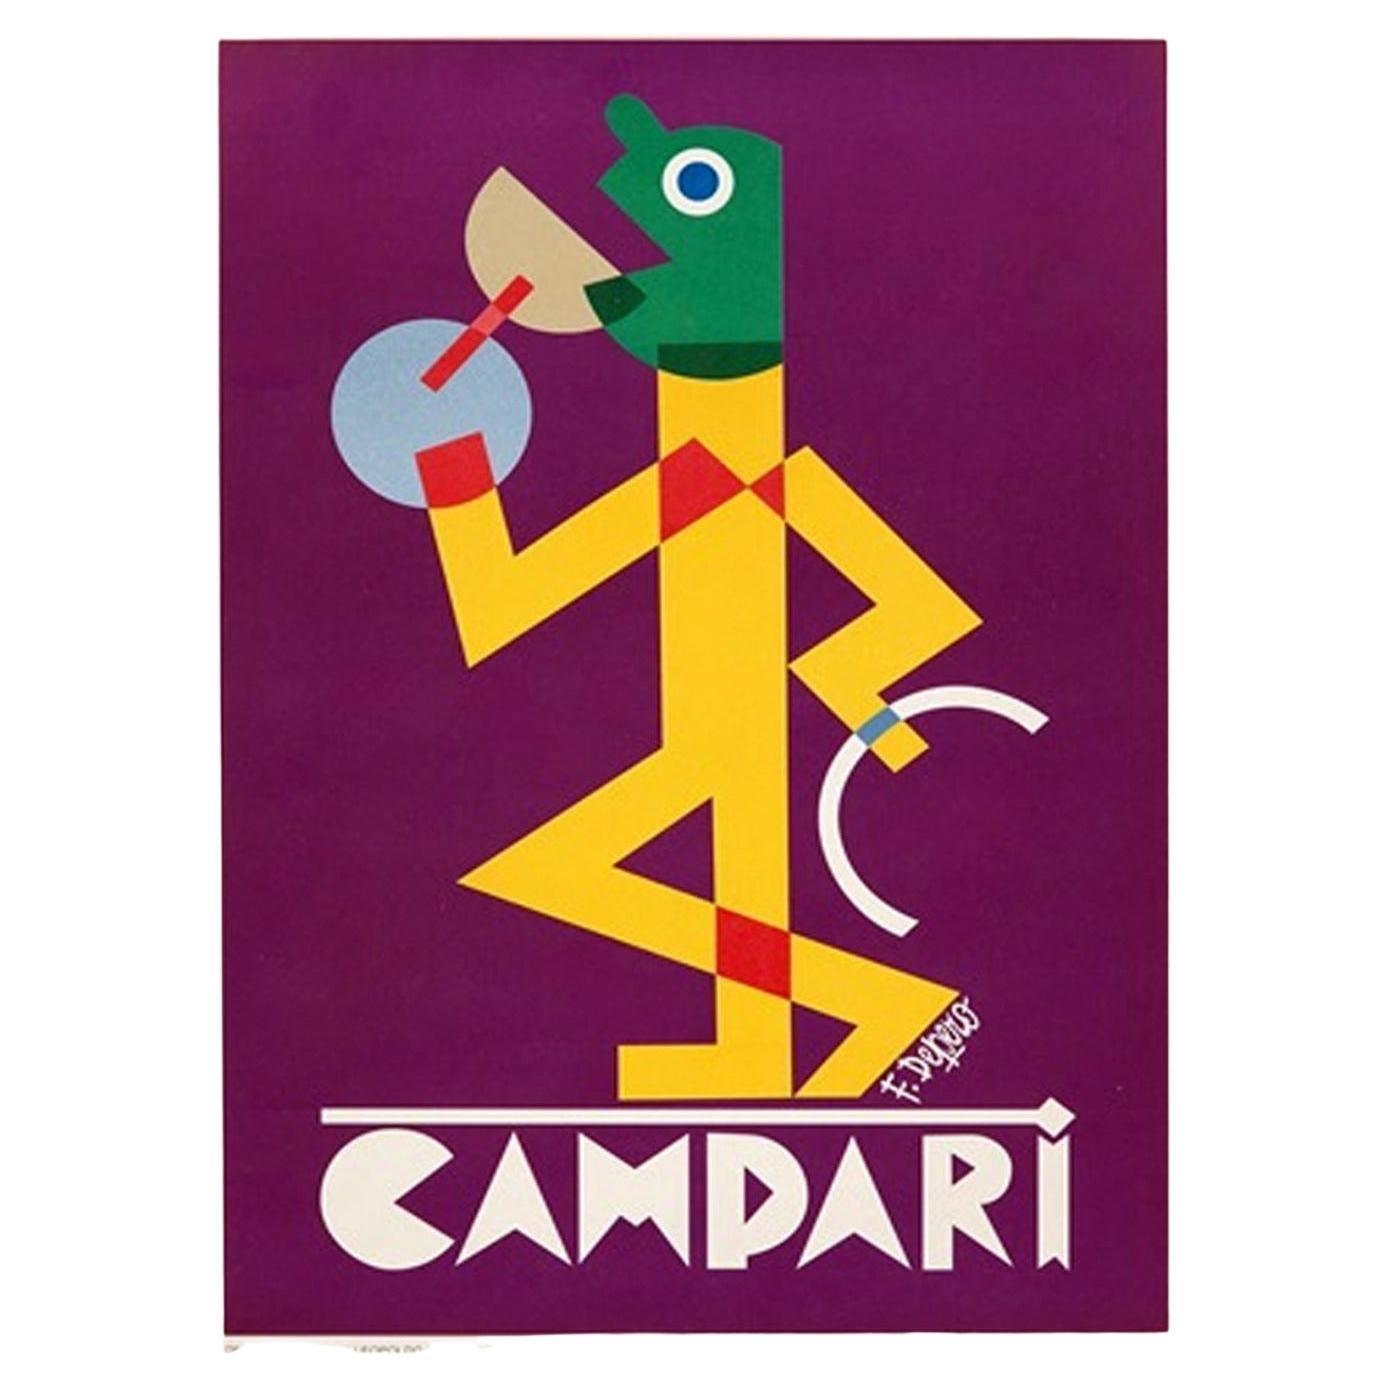 1928 Campari Viola, Fortunato Depero Original Vintage Poster For Sale